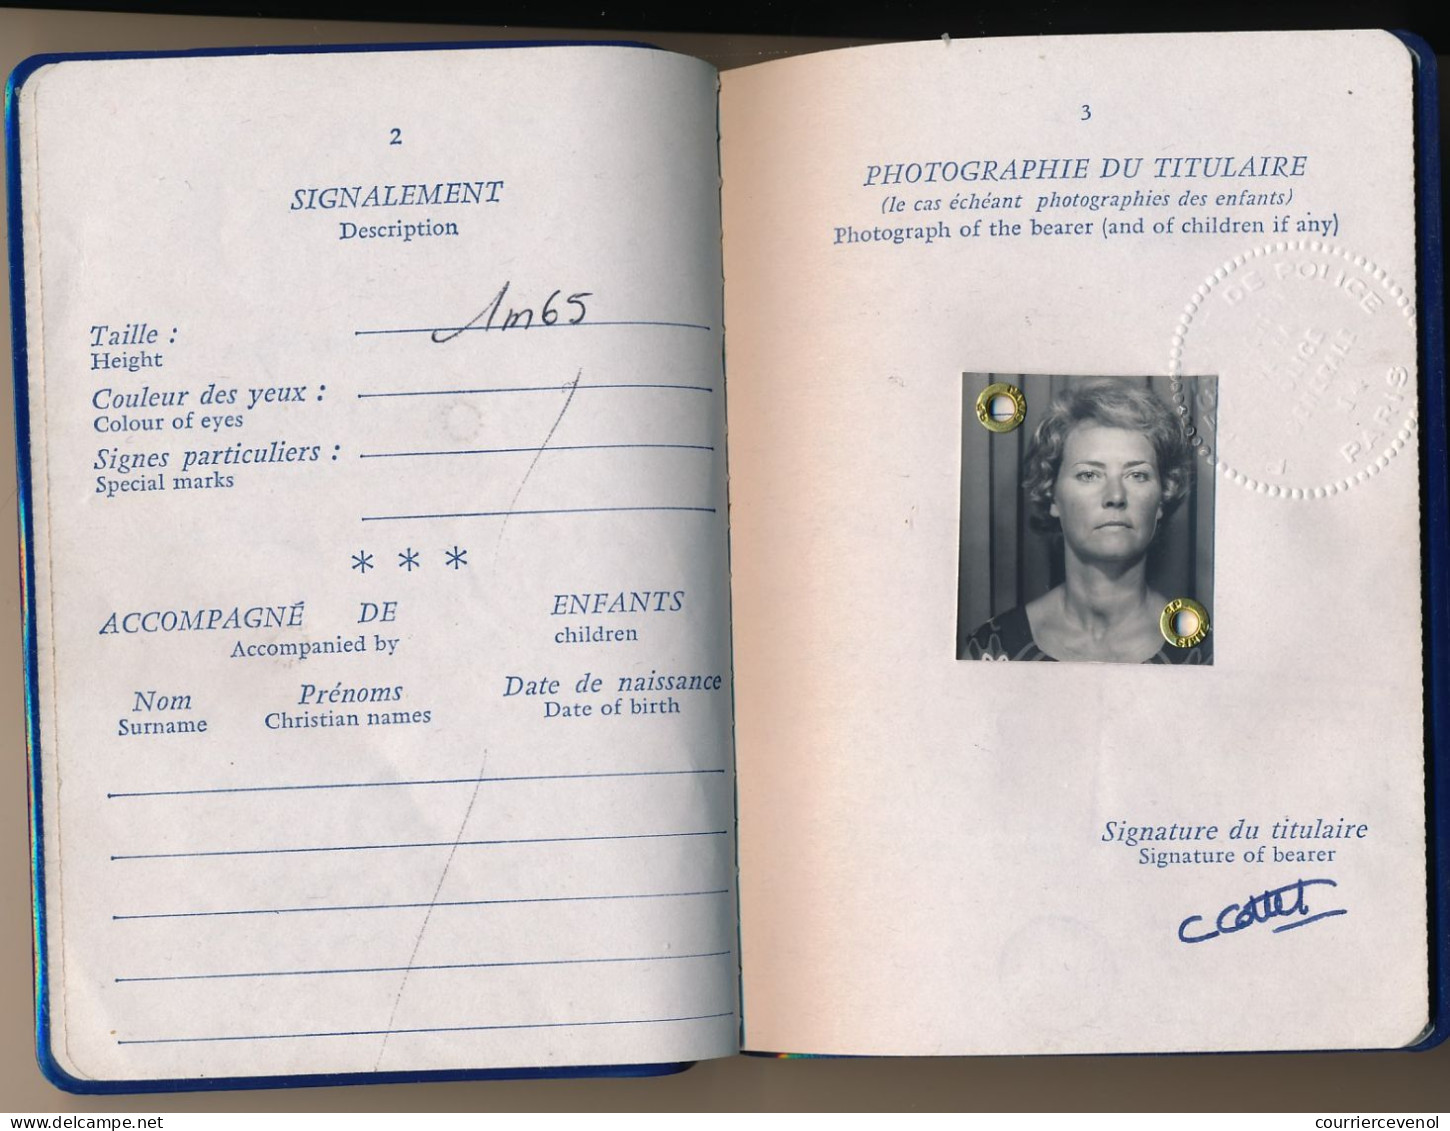 FRANCE / EGYPTE - Passeport émis à Paris 1981 (Fiscal 200,00F) + Fiscaux Egyptiens / Ambassade Egypte à Paris 1984 - Briefe U. Dokumente